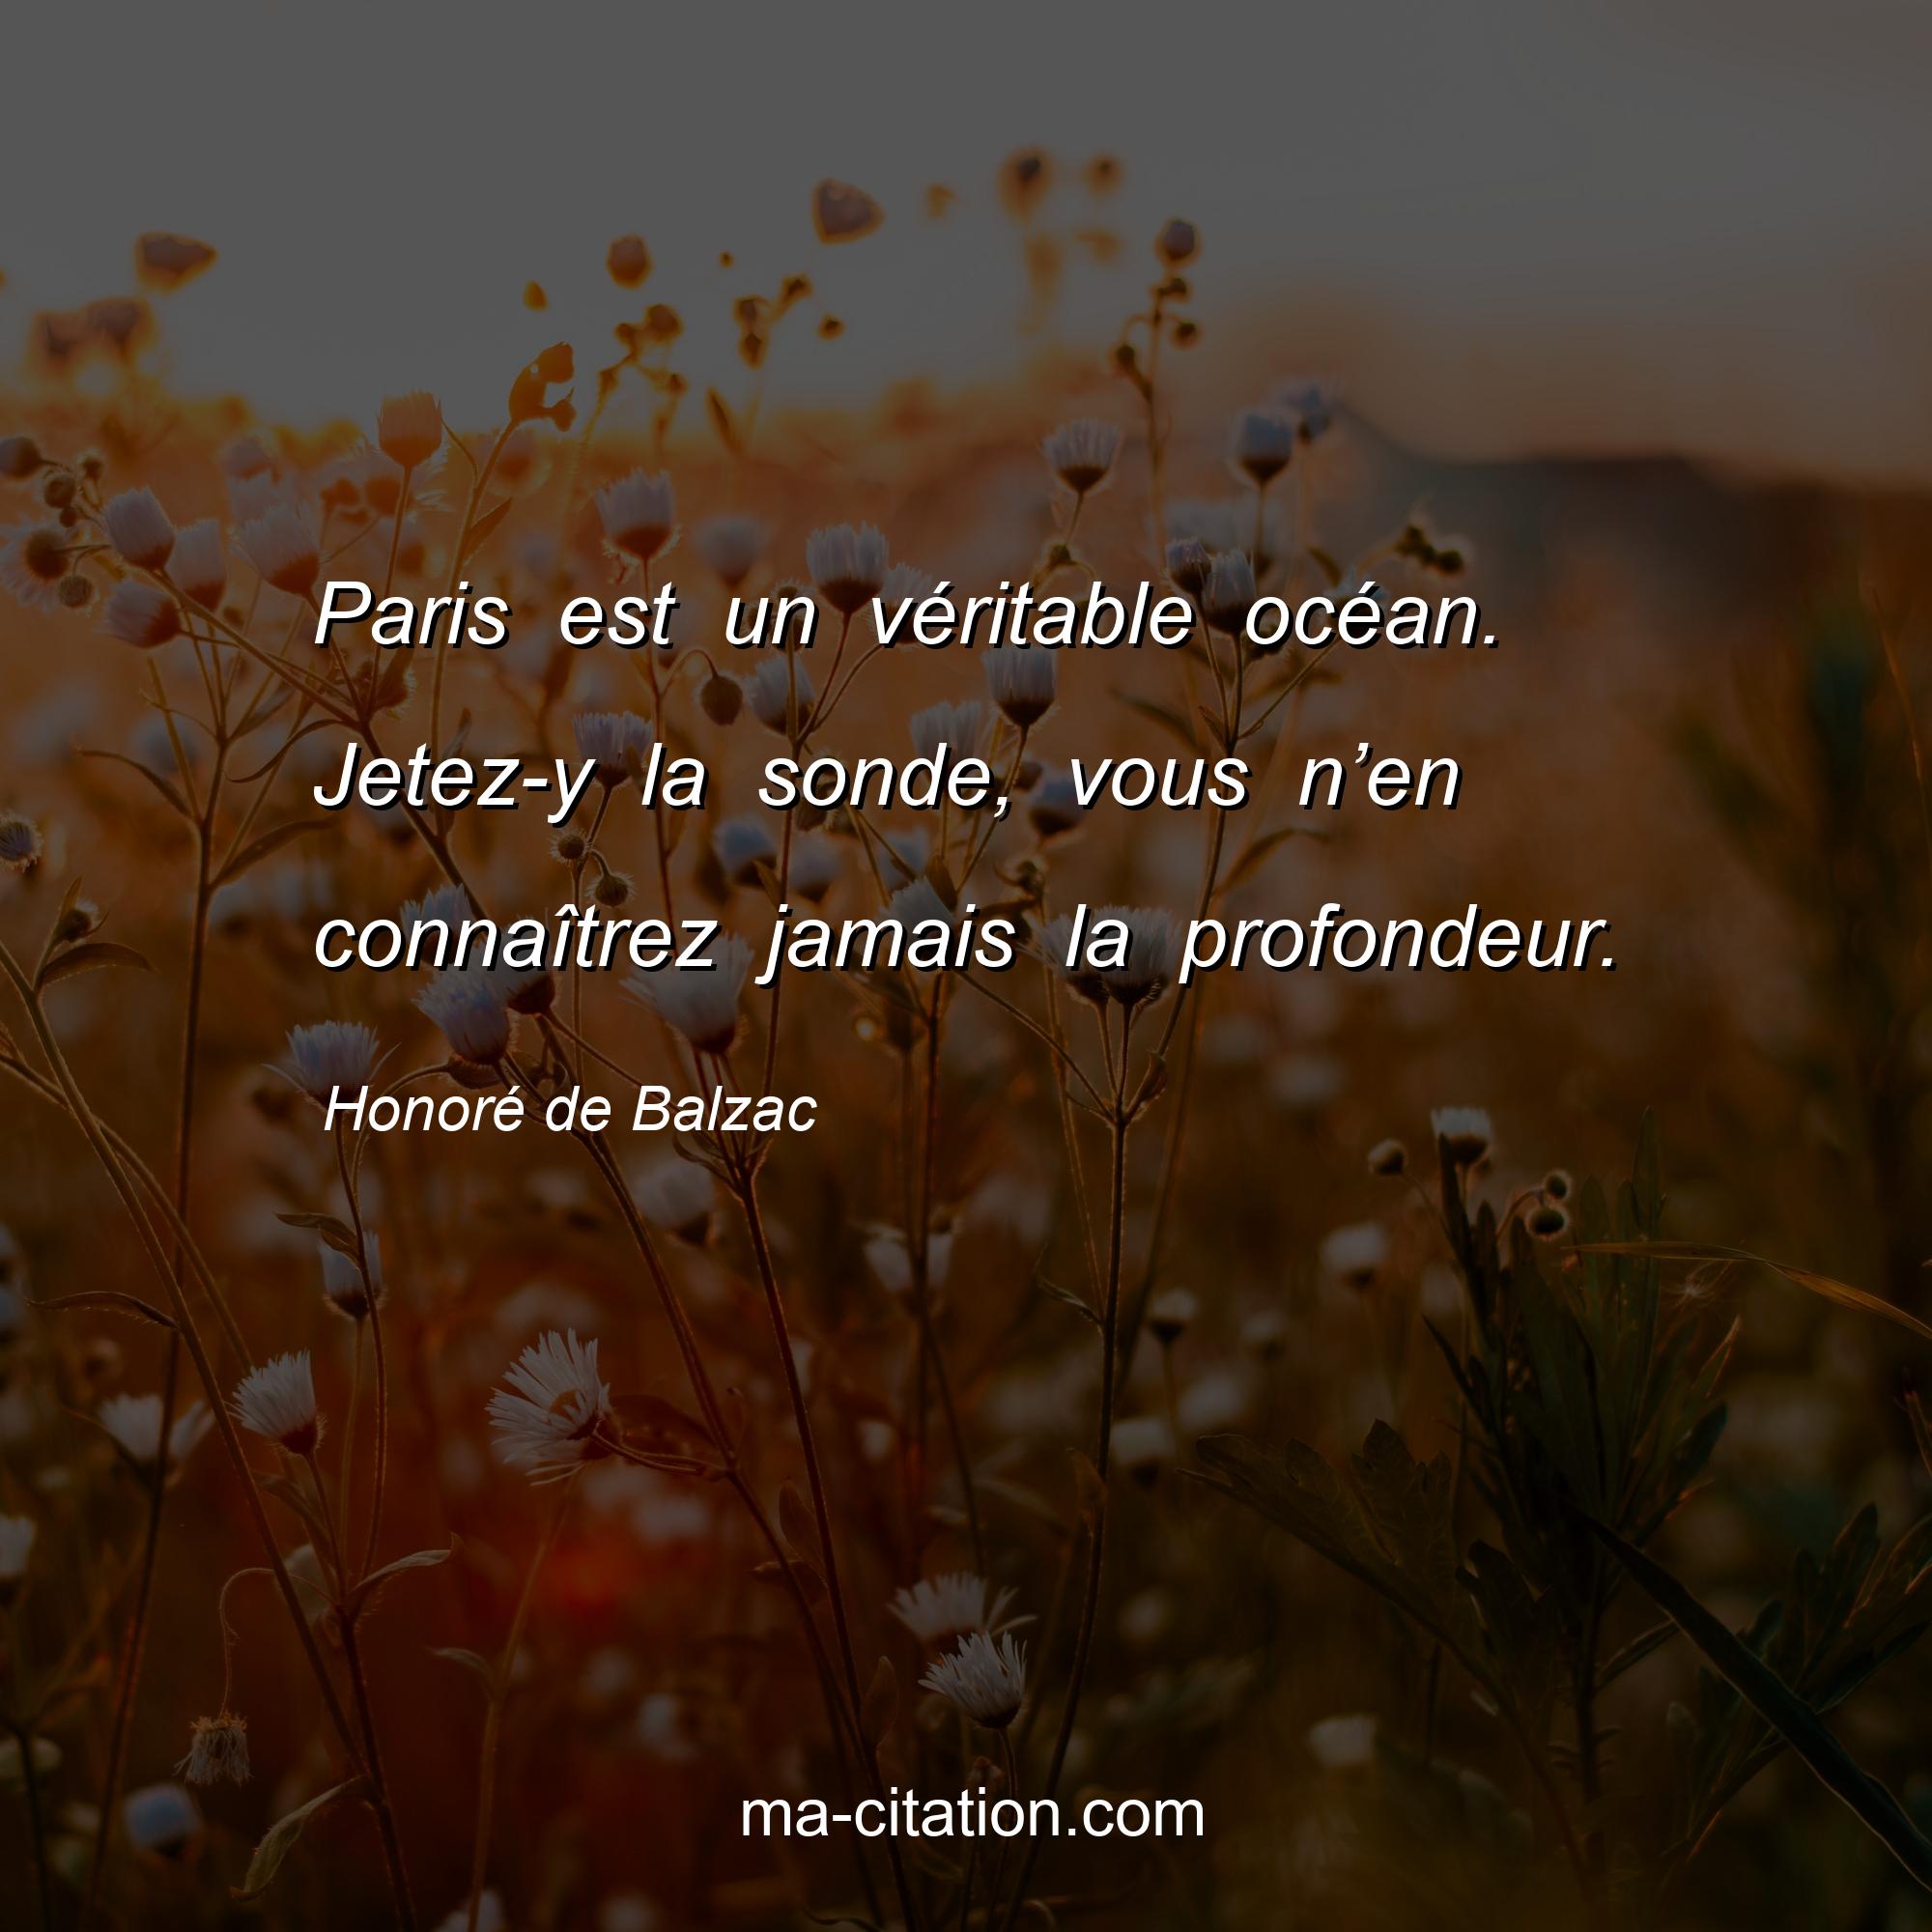 Honoré de Balzac : Paris est un véritable océan. Jetez-y la sonde, vous n’en connaîtrez jamais la profondeur.